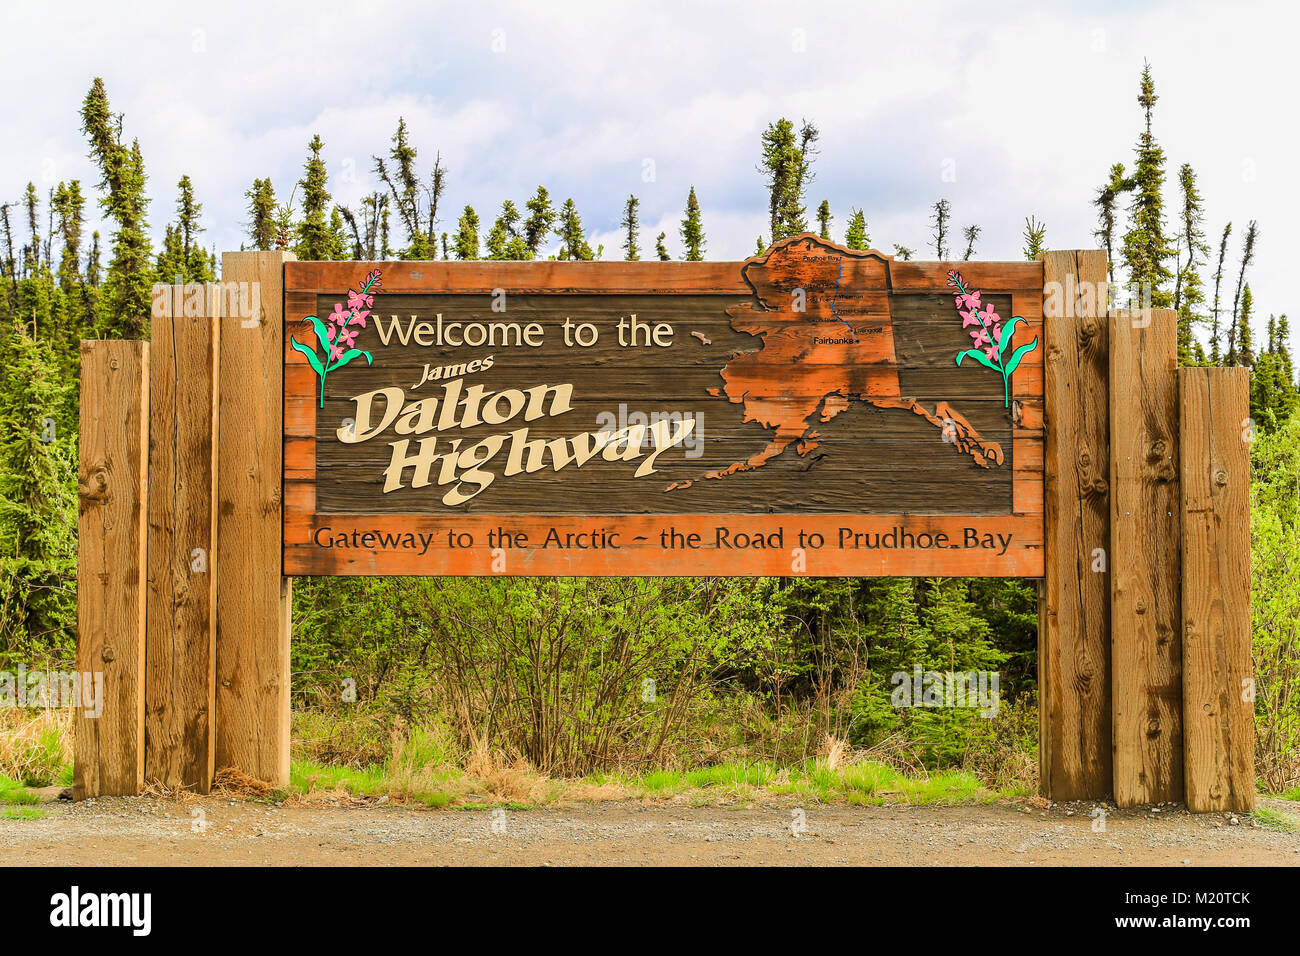 Dalton Highway, Alaska, EE.UU. - 24 de mayo de 2017: la Dalton Highway cartel a la entrada de la autopista. Foto de stock